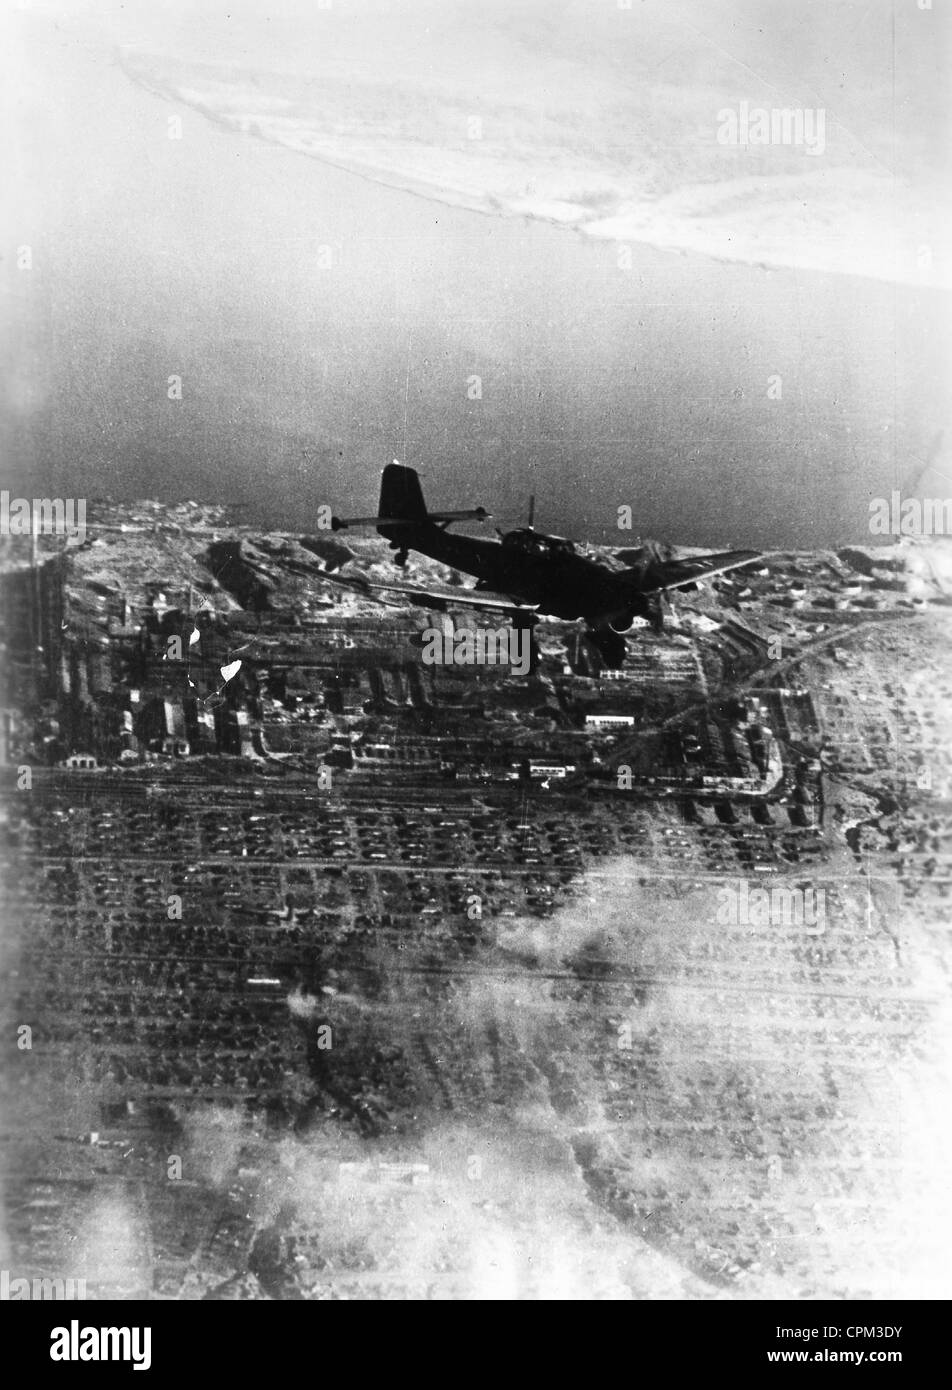 Avion de chasse allemand lors d'une attaque sur Stalingrad, 1942 Banque D'Images